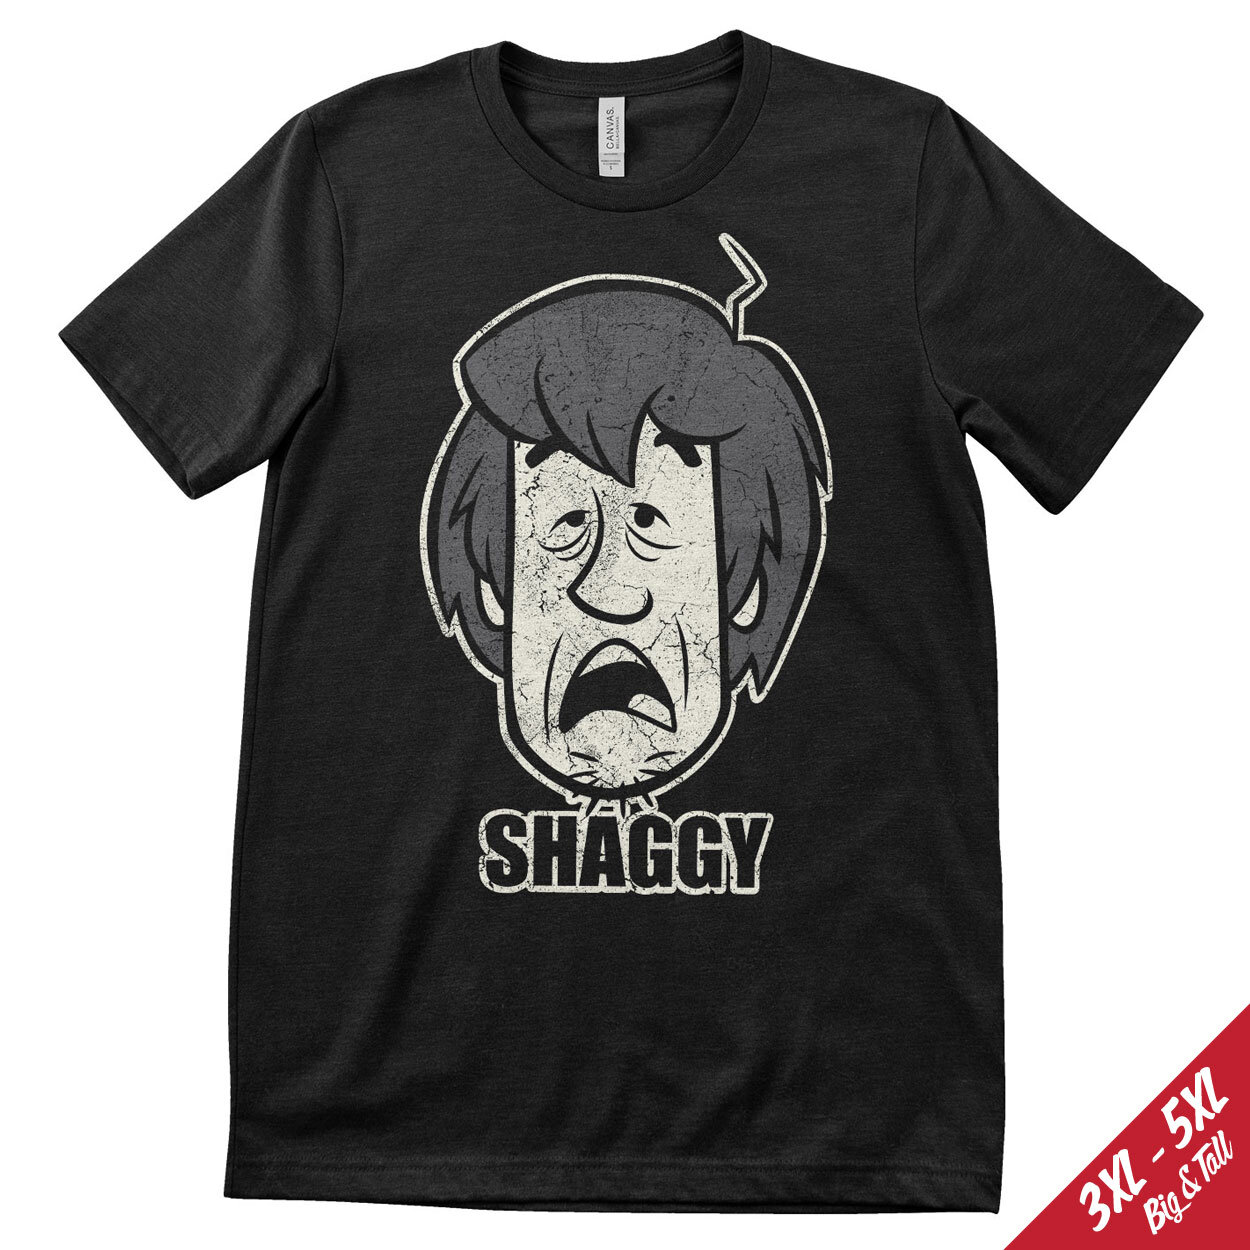 Shaggy Distressed Big & Tall T-Shirt